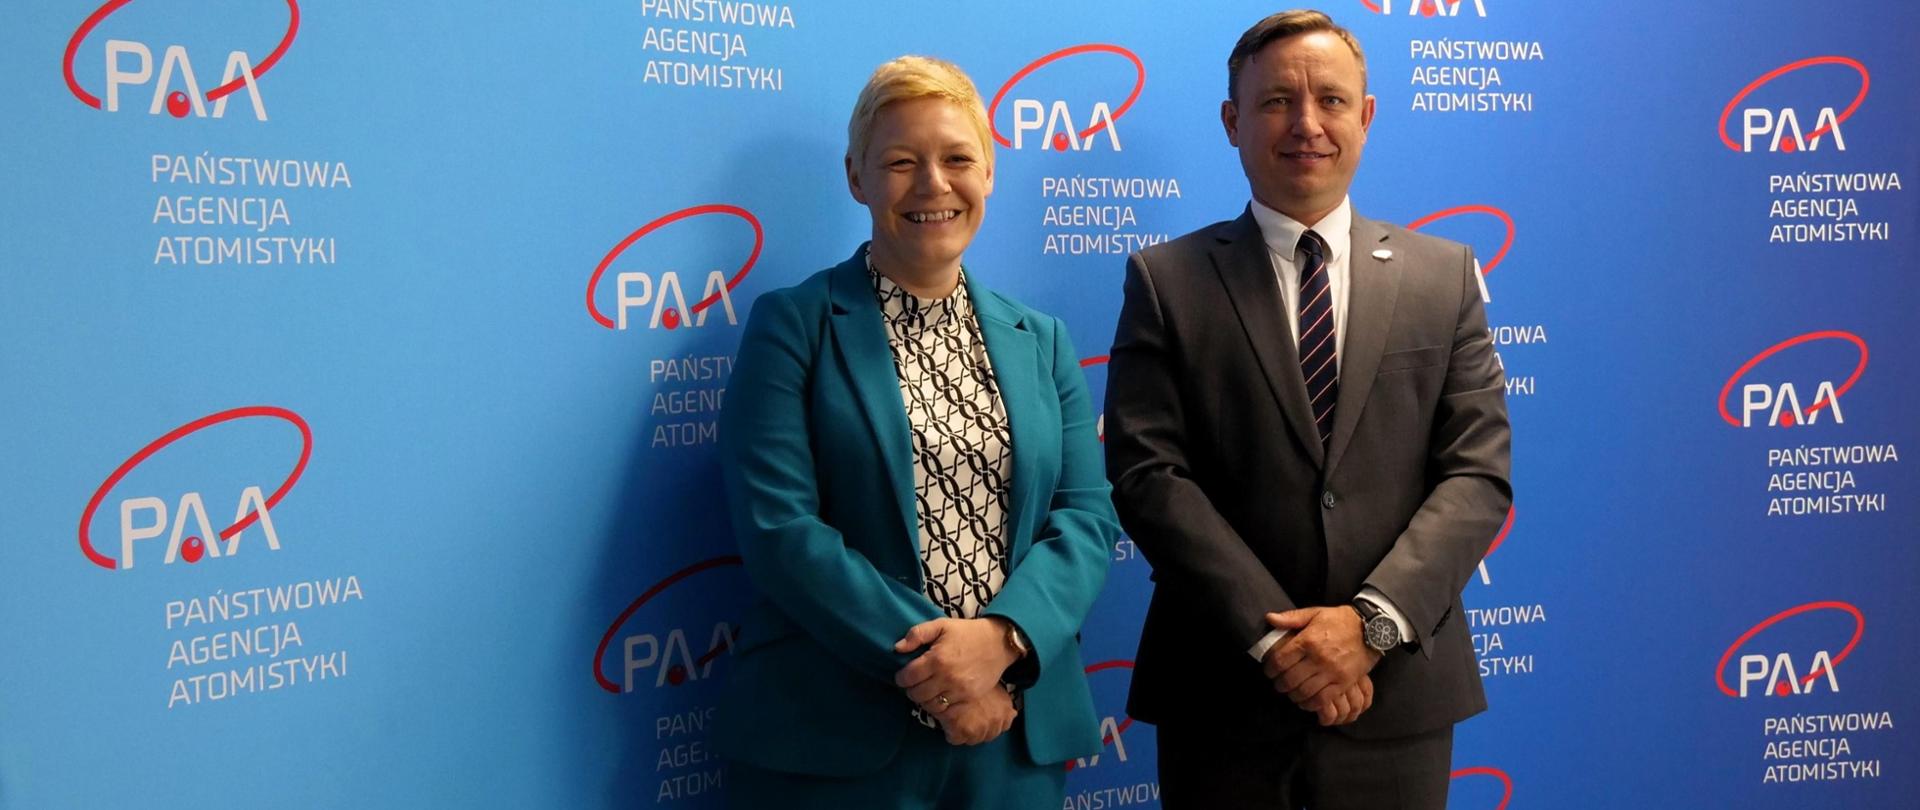 Prezes Państwowej Agencji Atomistyki Andrzej Głowacki i Jennifer Tyldesley Radcą-Minister ds. Gospodarczych w ambasadzie brytyjskiej stoją na tle ścianki z logo PAA.